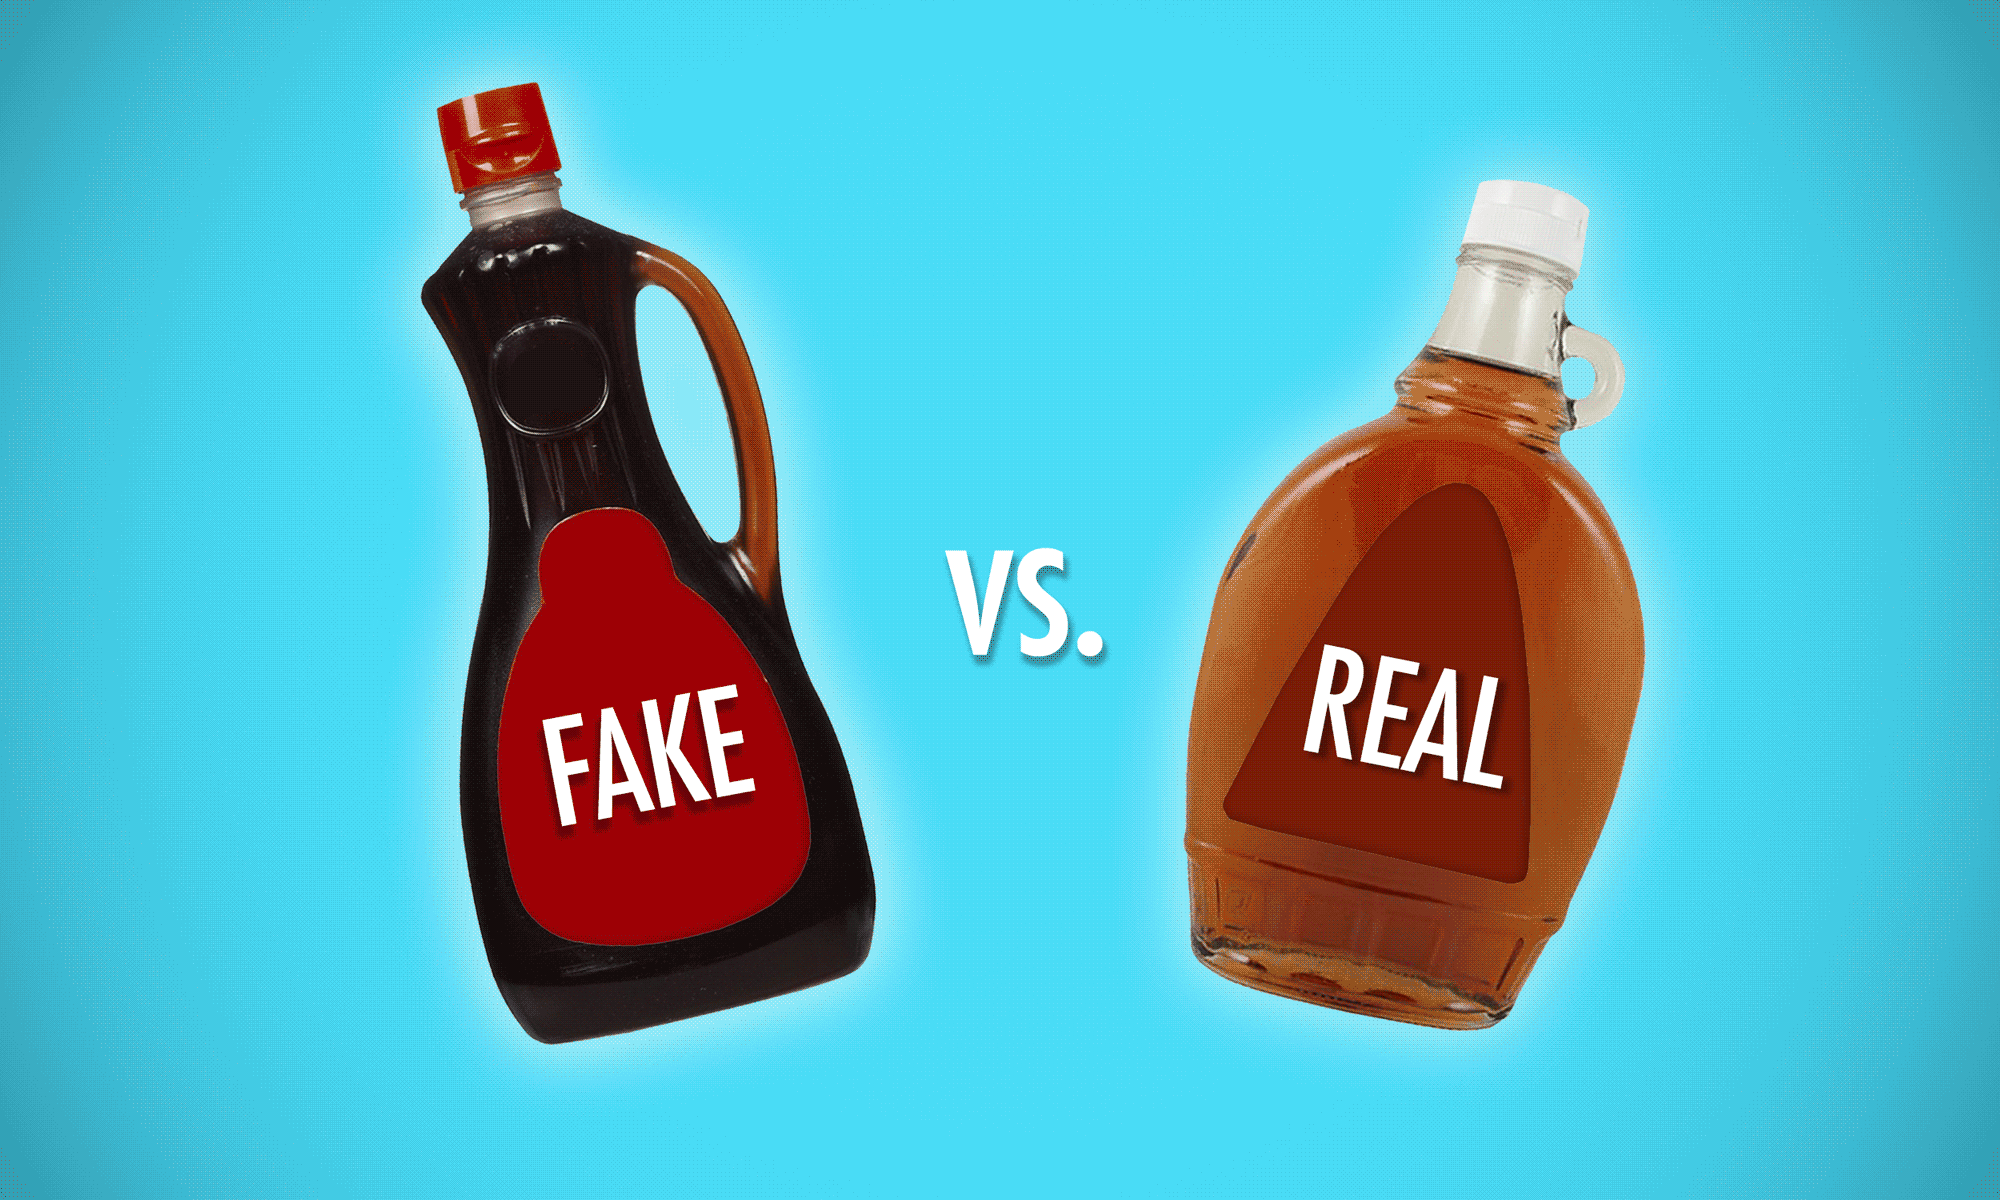 real vs fake